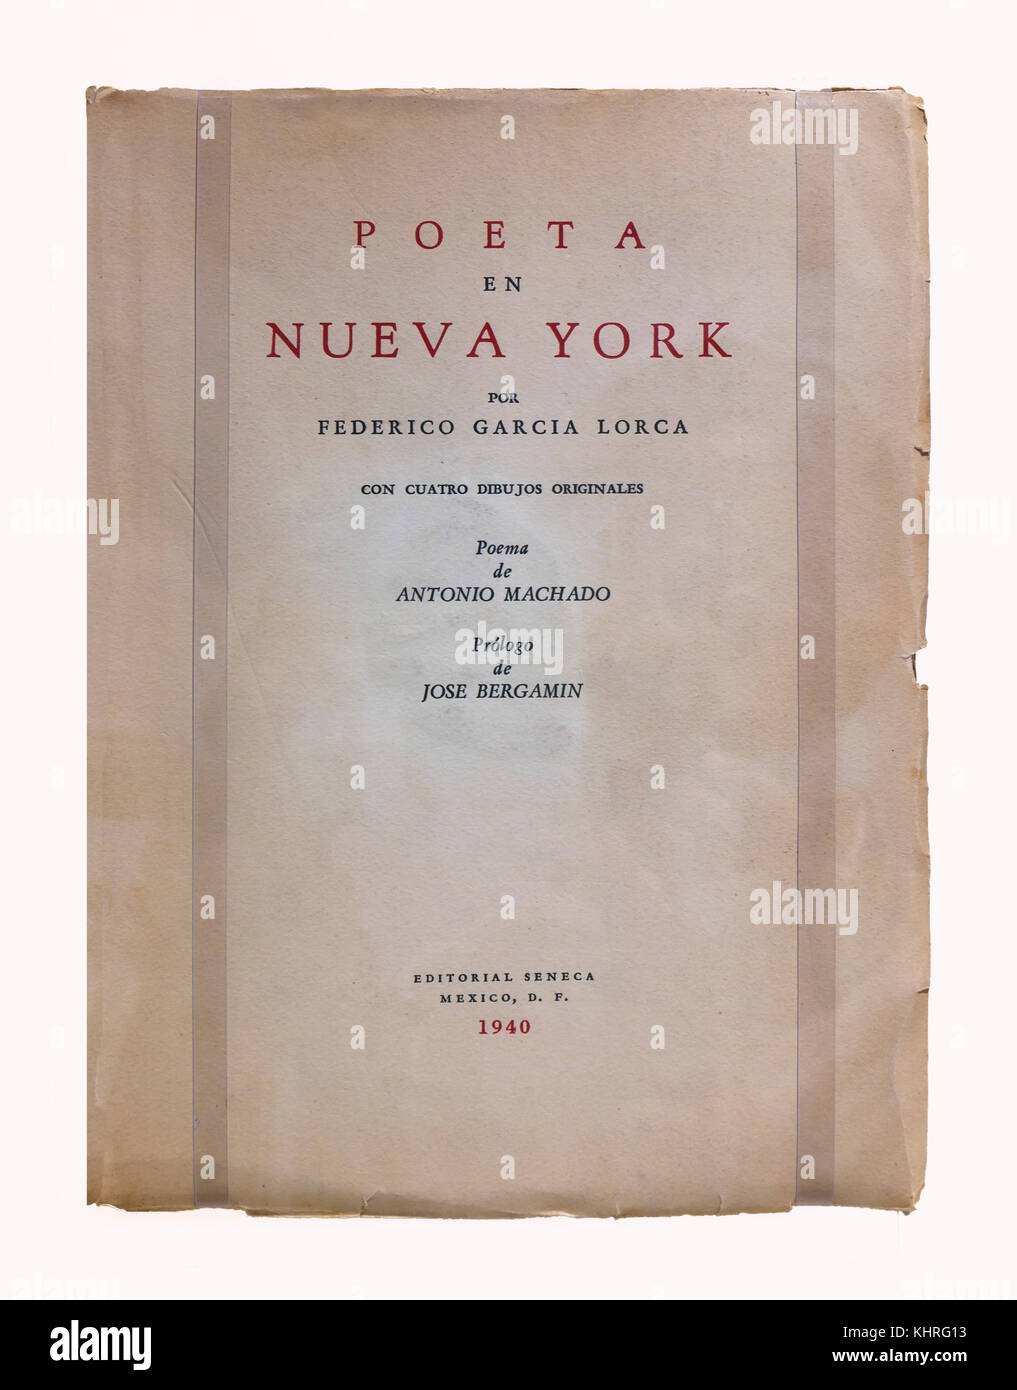 Birthplace - museum of the poet Federico Garcia Lorca, Book 'Poeta en Nueva York', Fuente Vaqueros, Granada province, Region of Andalusia, Spain, Euro Stock Photo